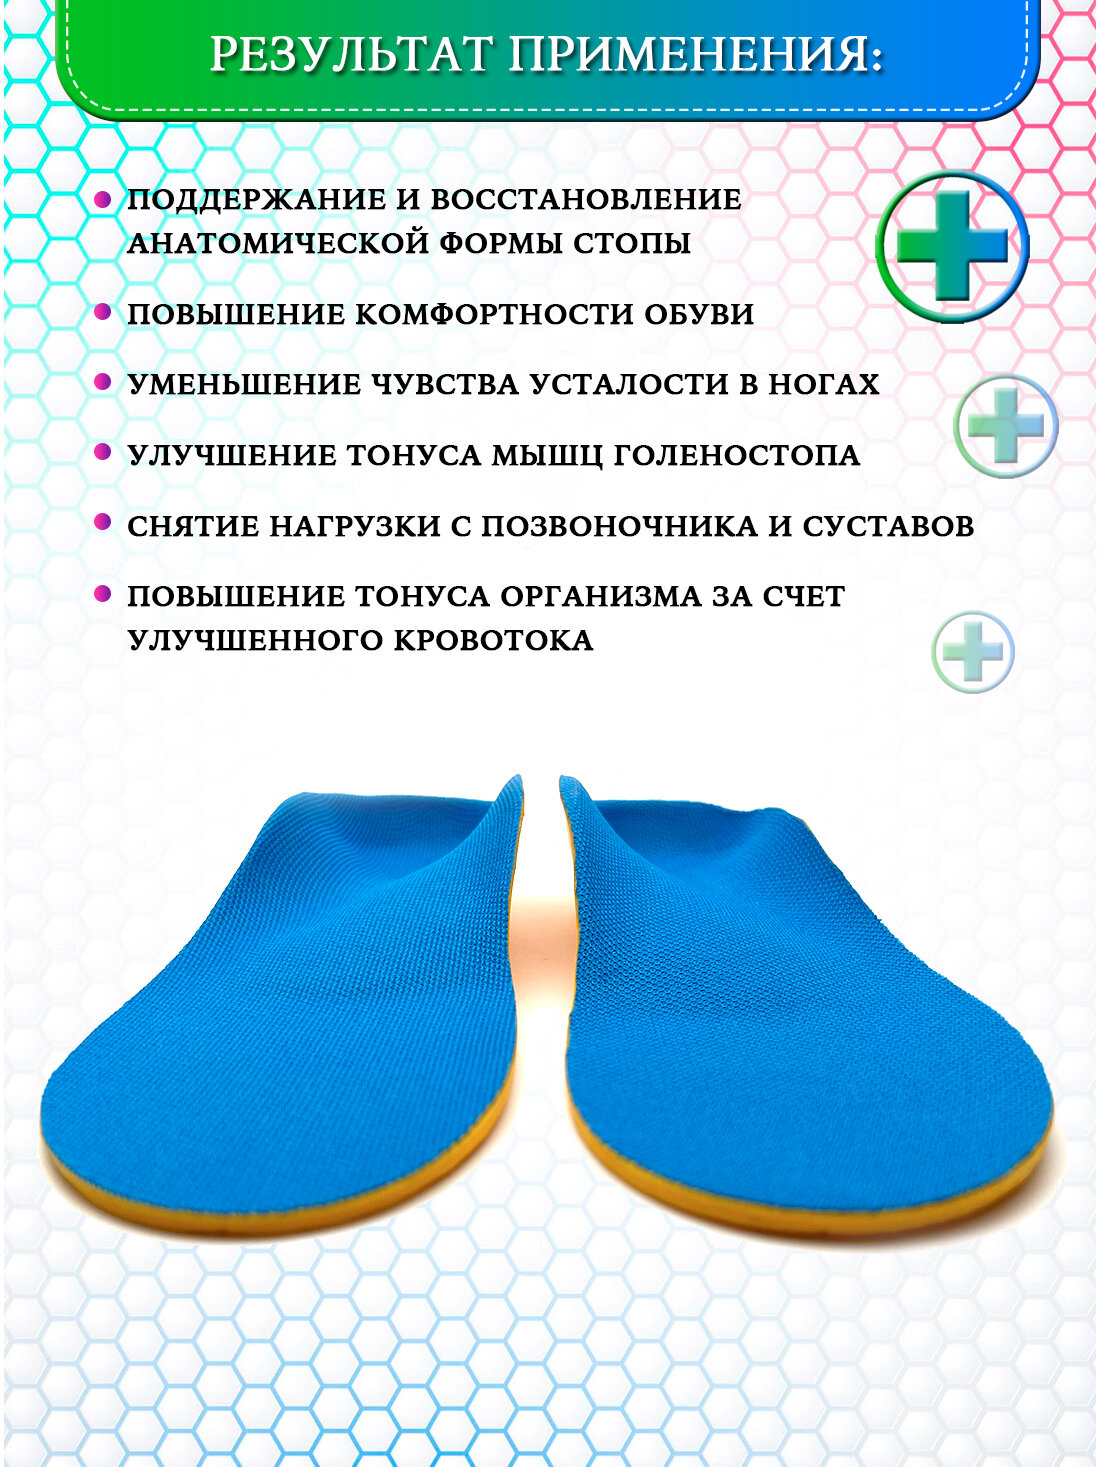 Стельки ортопедические Super Feet Размер 38-39 (25 см) синие для обуви при плоскостопии, вальгус 1-2-3 степени, пяточная шпора, от боли в ногах